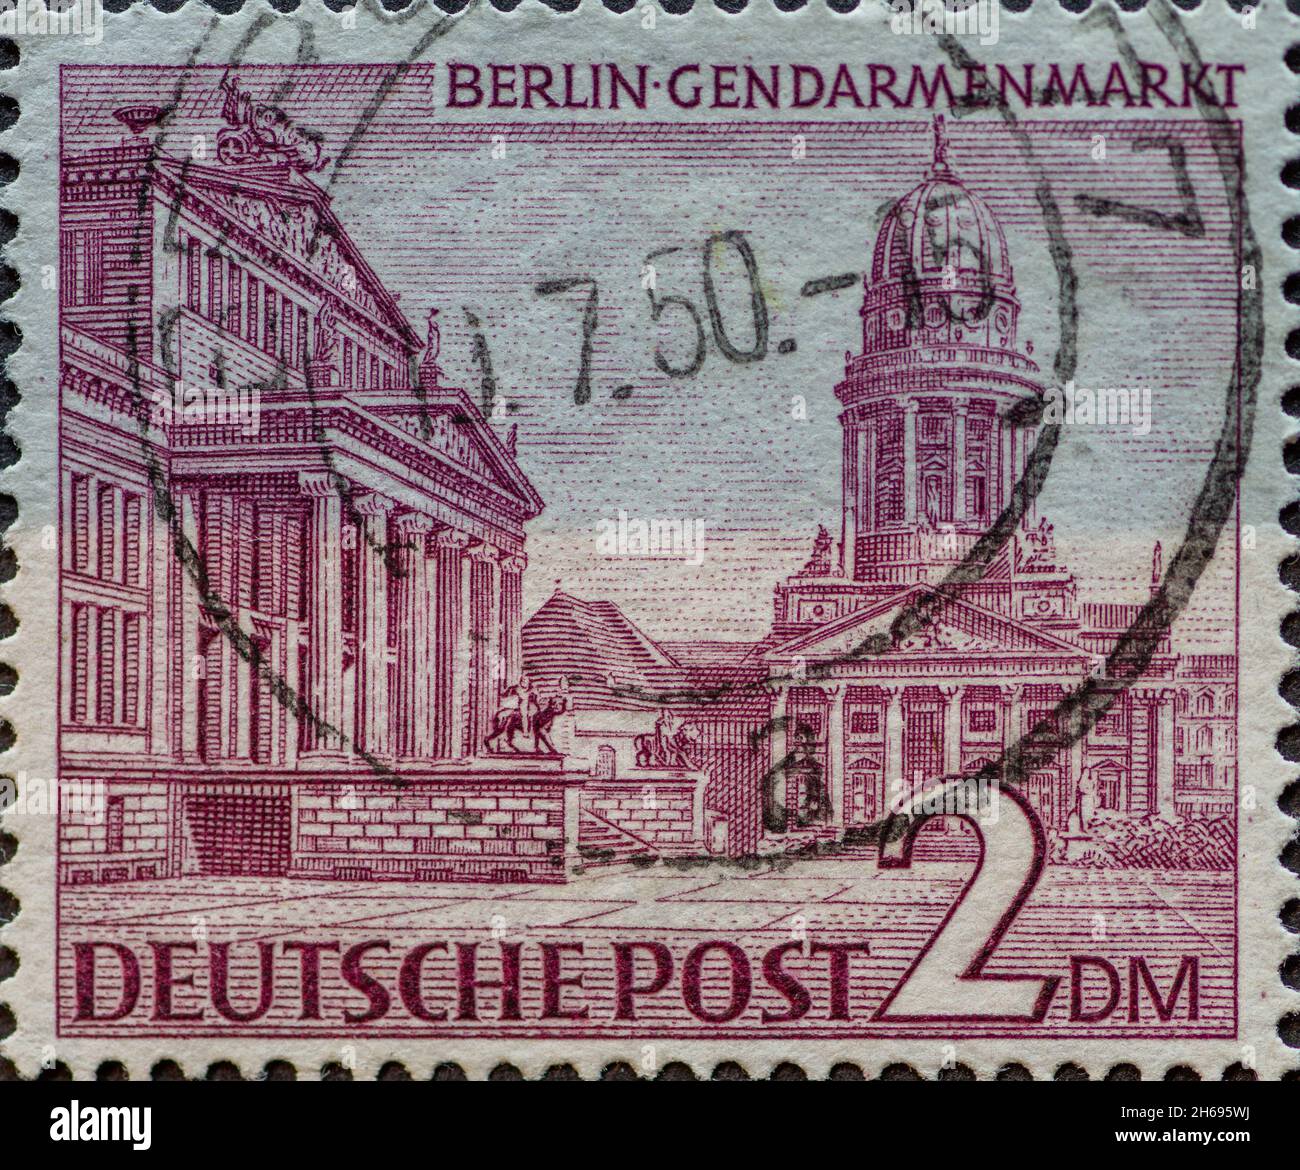 ALLEMAGNE, Berlin - VERS 1949: Timbre-poste de l'Allemagne, Berlin montrant les bâtiments de Berlin: Marché de Berlin Gendarmen en violet Banque D'Images